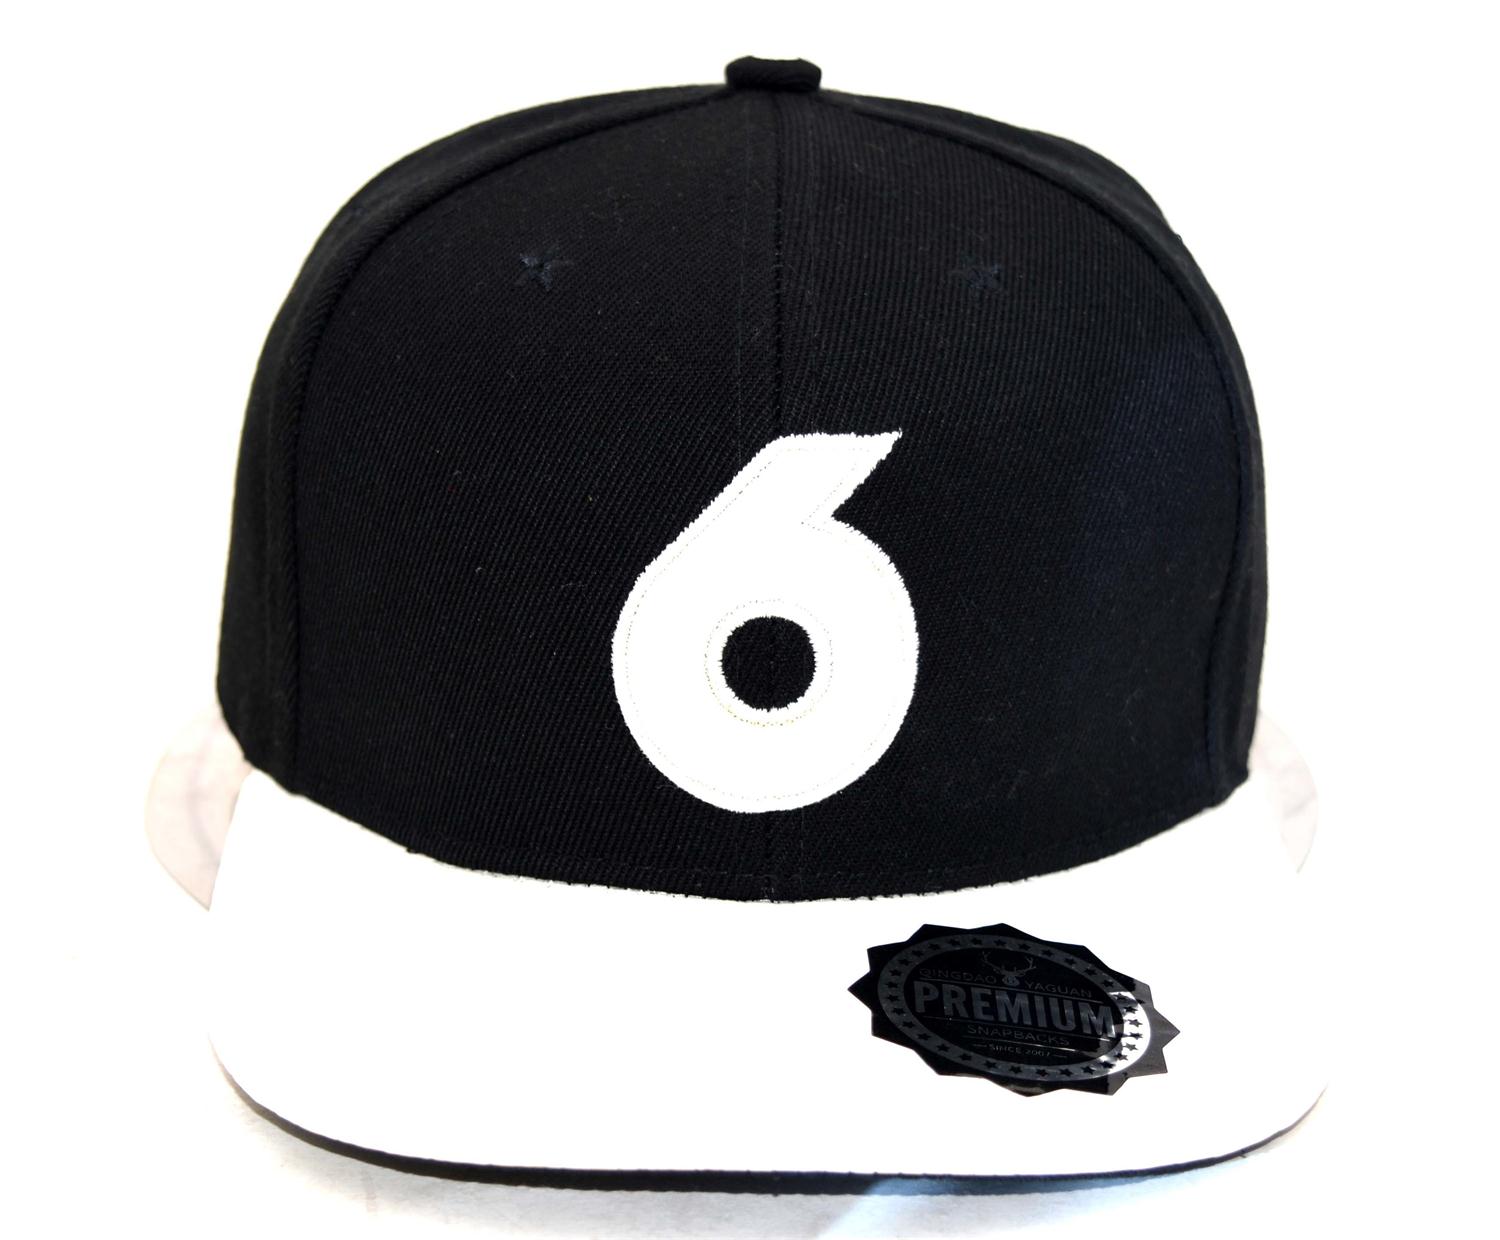 New snapback cap